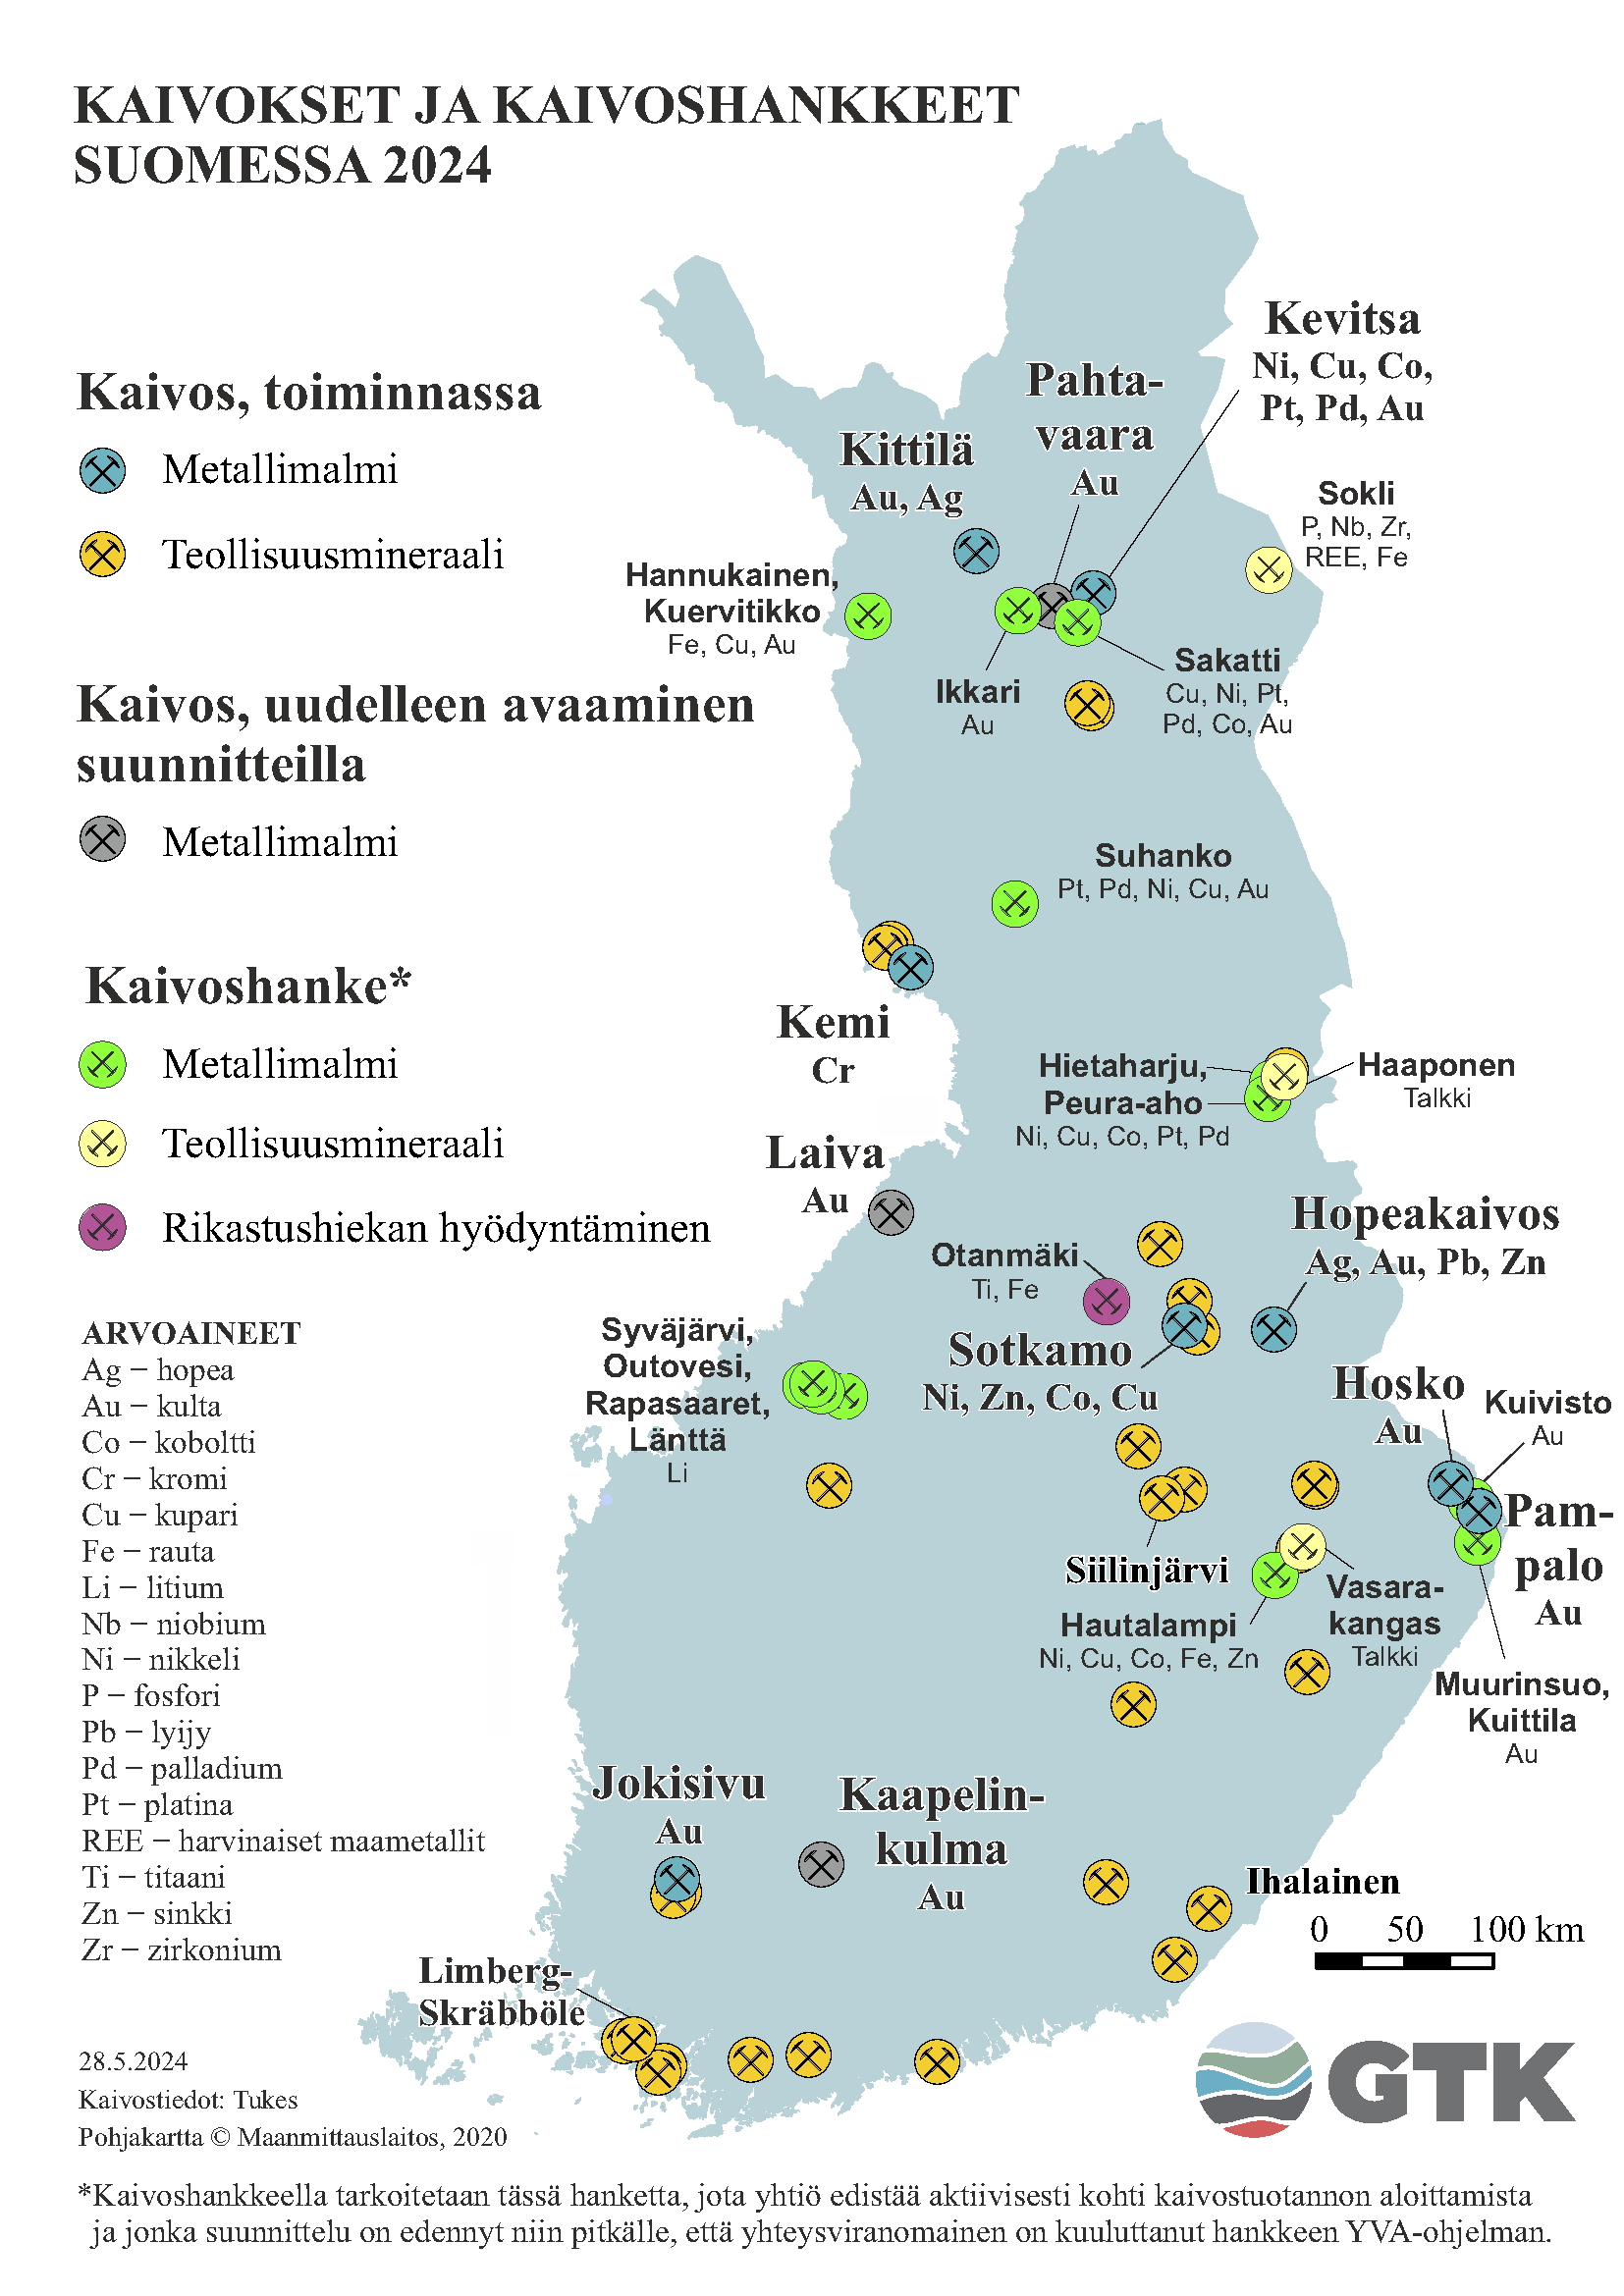 Suomen kartta, johon on merkattu kaivokset ja kaivoshankkeet Suomessa vuonna 2024